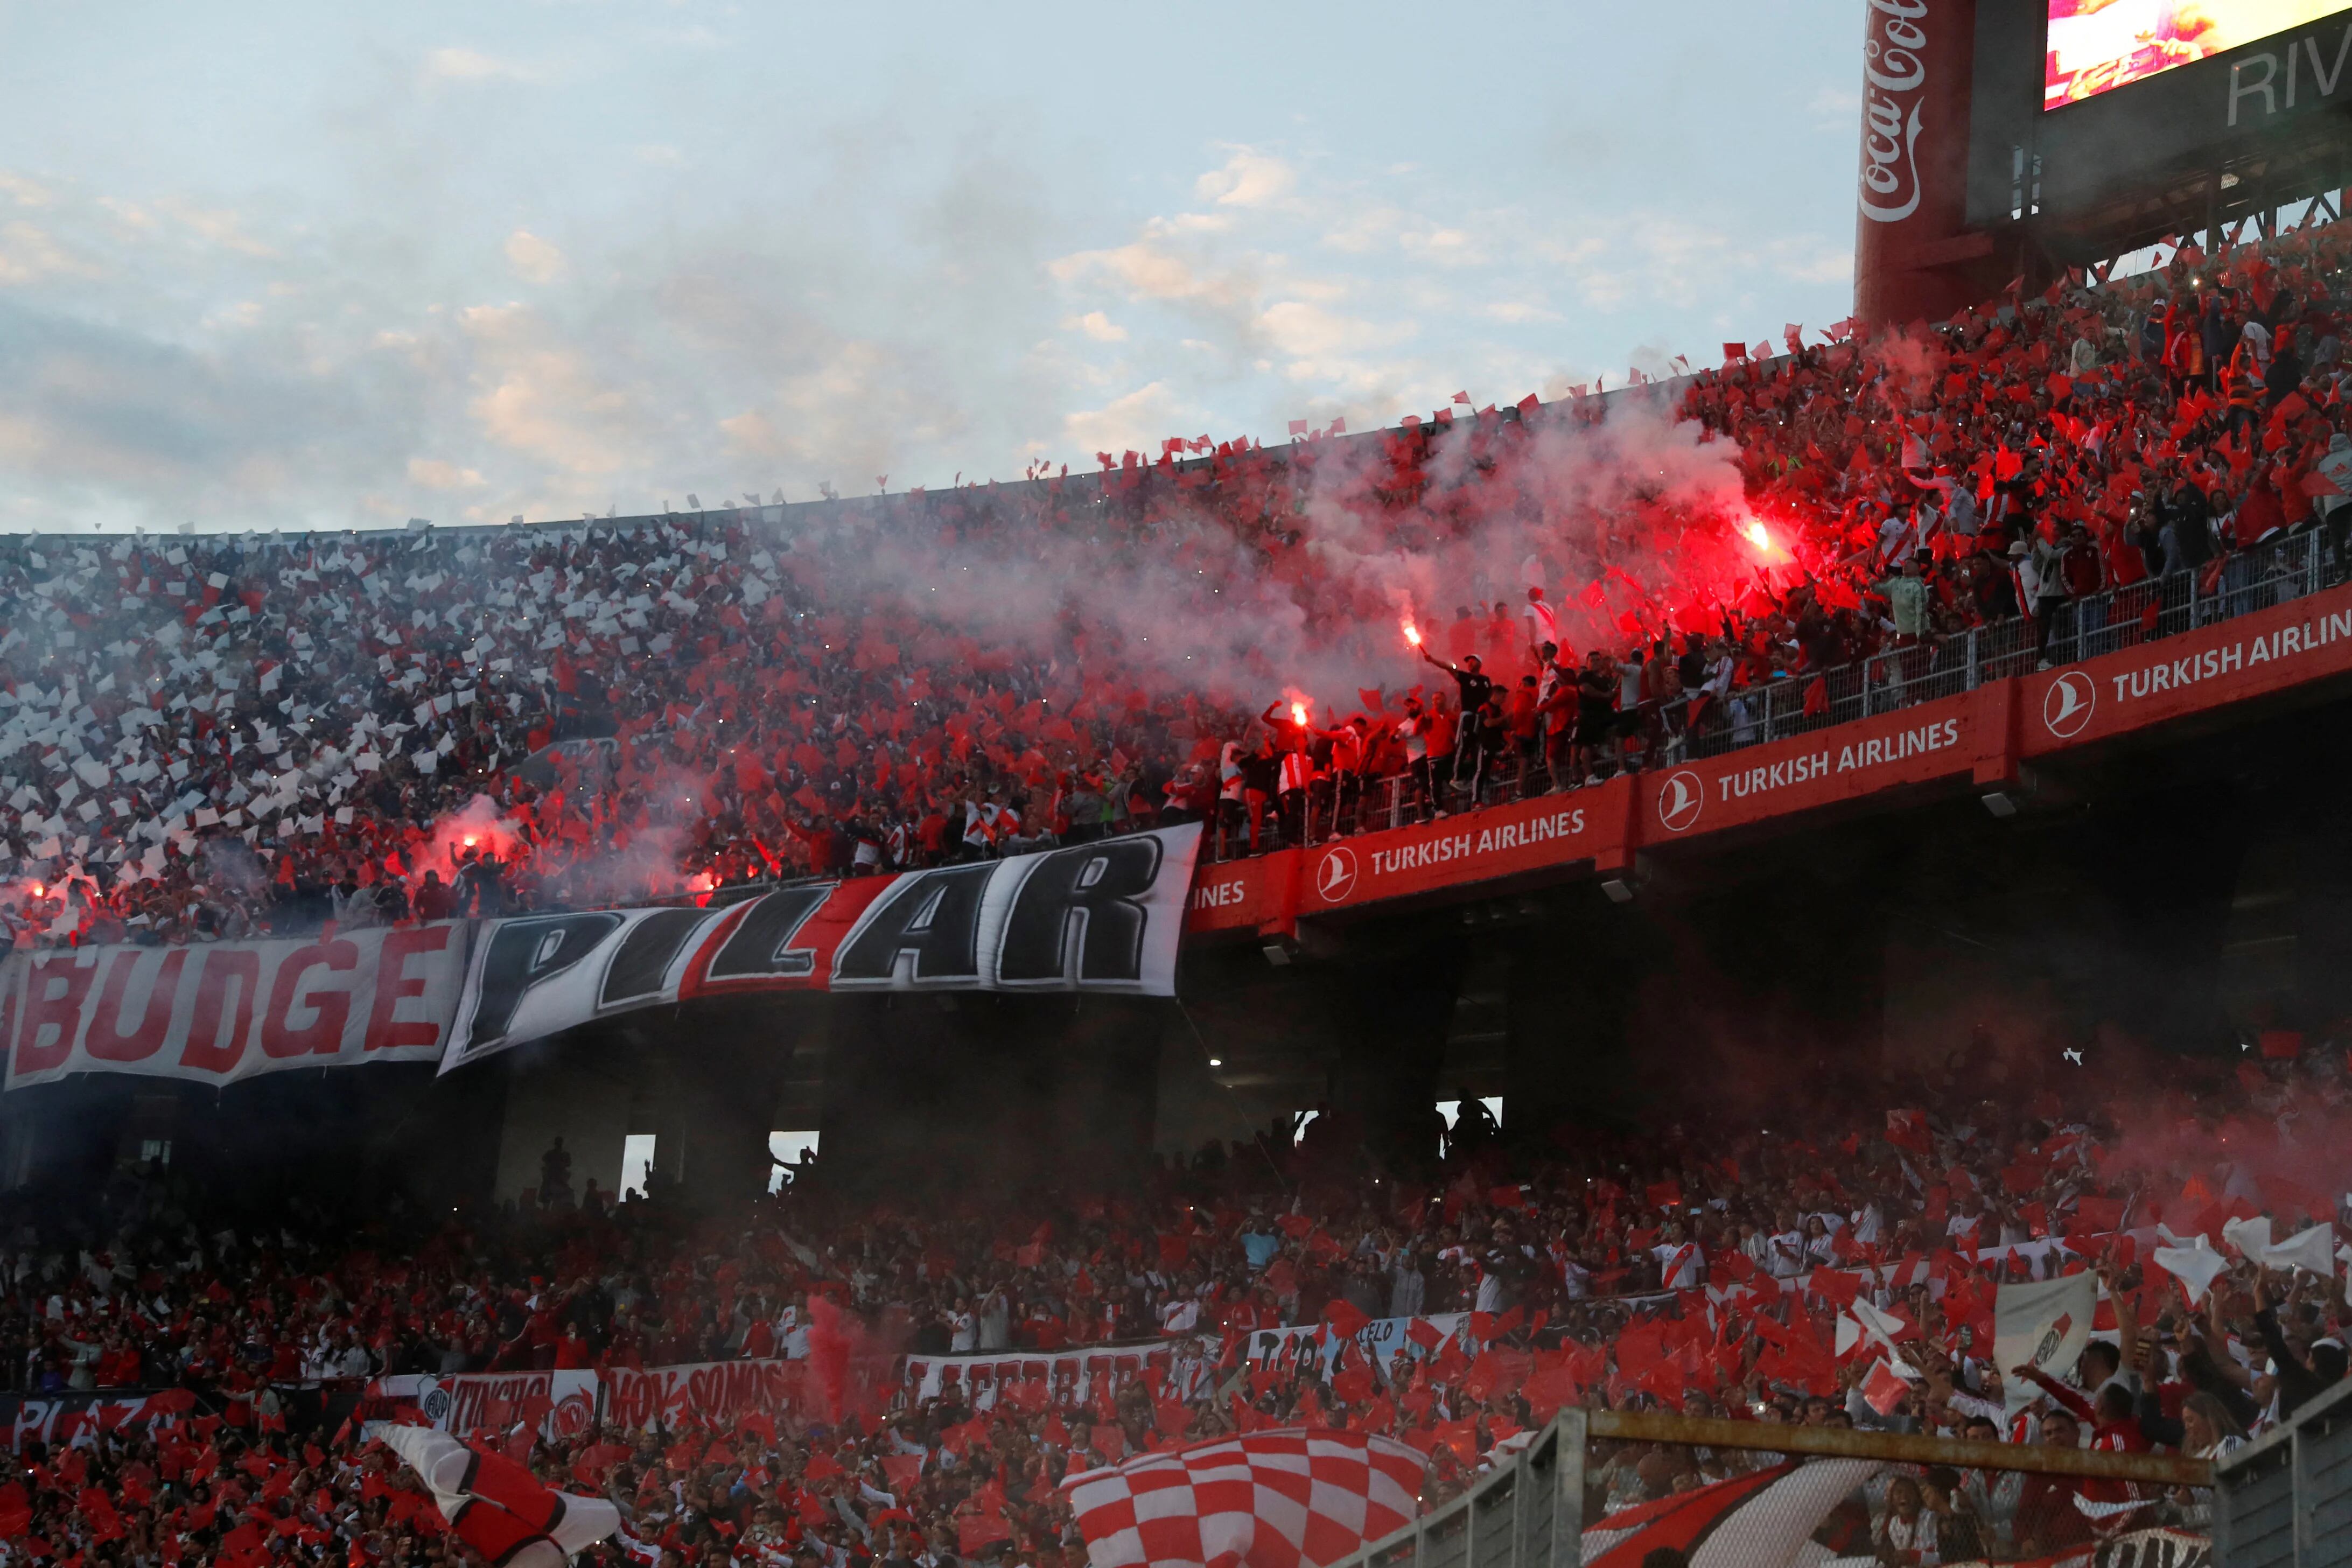 Doentes por Futebol - O Monumental no Superclássico 200. River Plate 1x2  Boca. 📷 Ale Petra